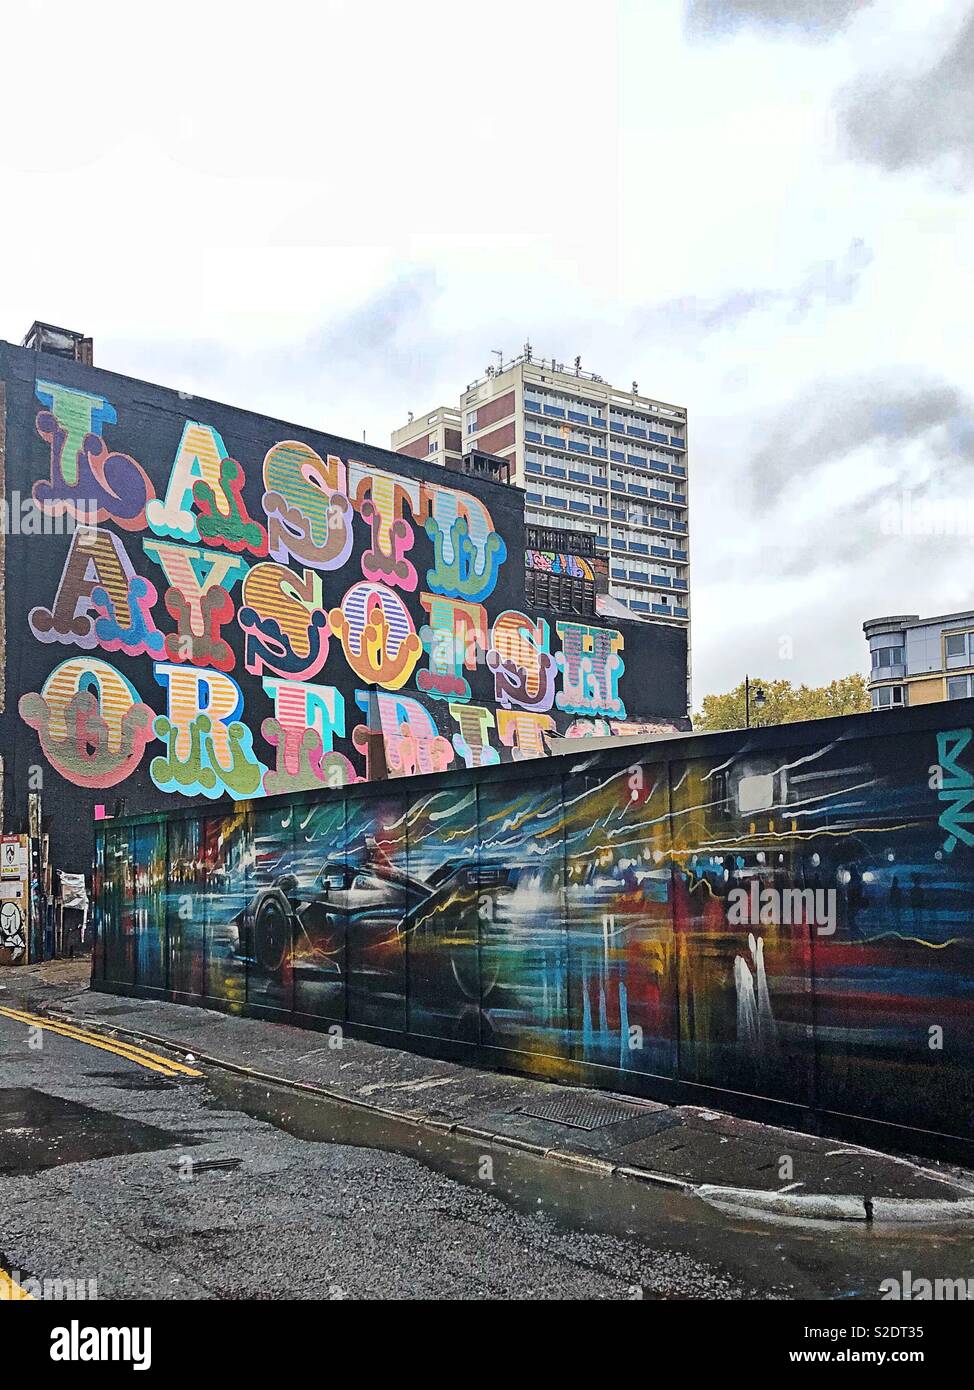 Ben Die letzten Tage von shoreditch Wandgemälde und neues Auto Sprayfarbe Wandbild an regnerischen Tag in East London, England Stockfoto